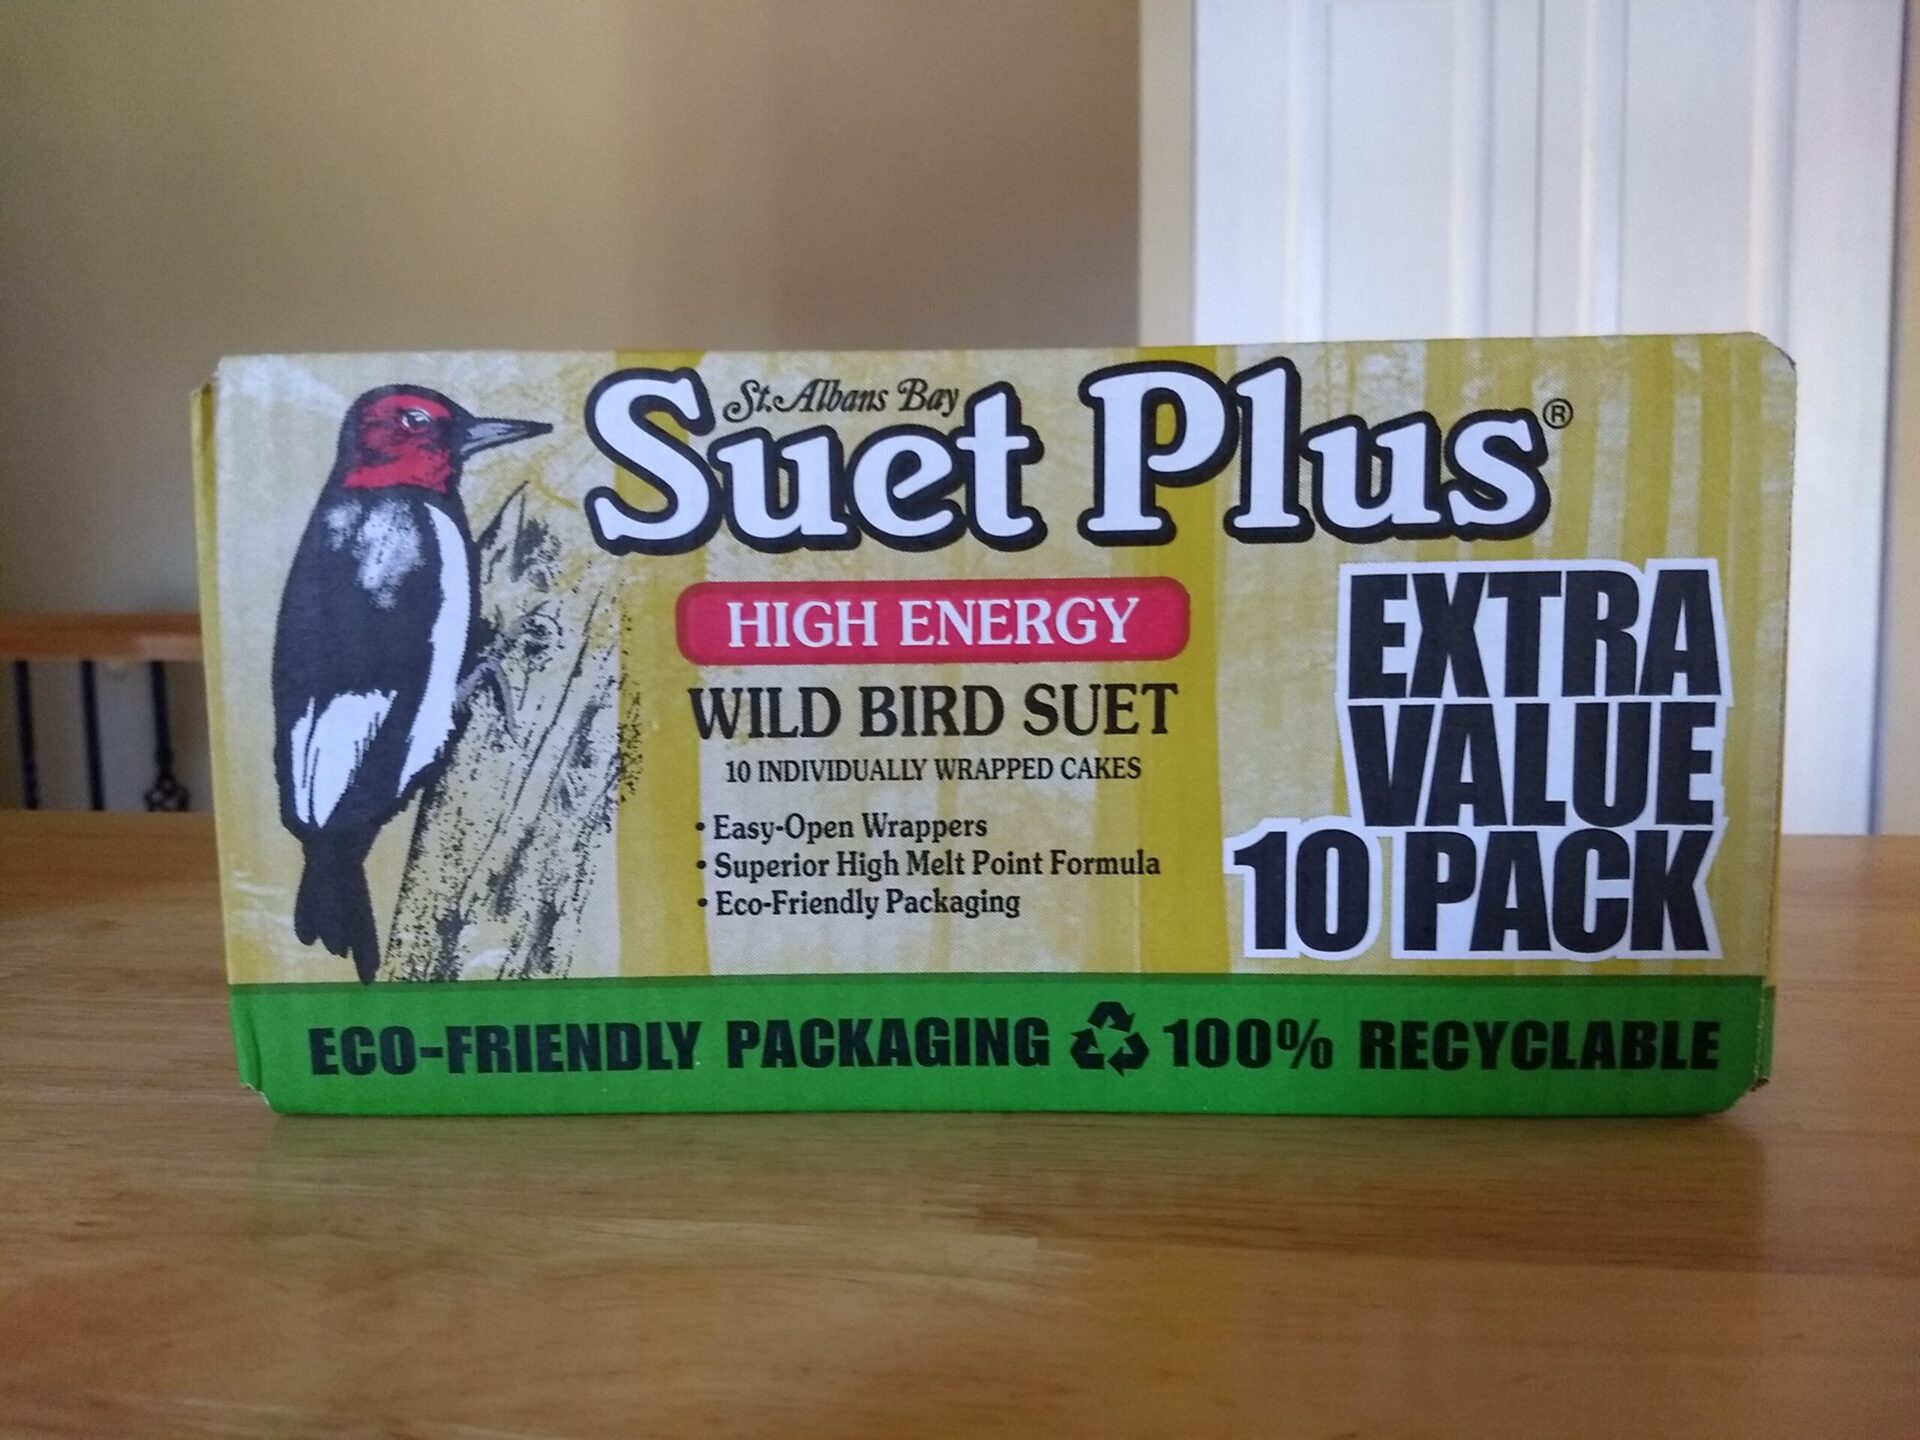 St. Albans Bay Suet Plus High Energy Wild Bird Suet